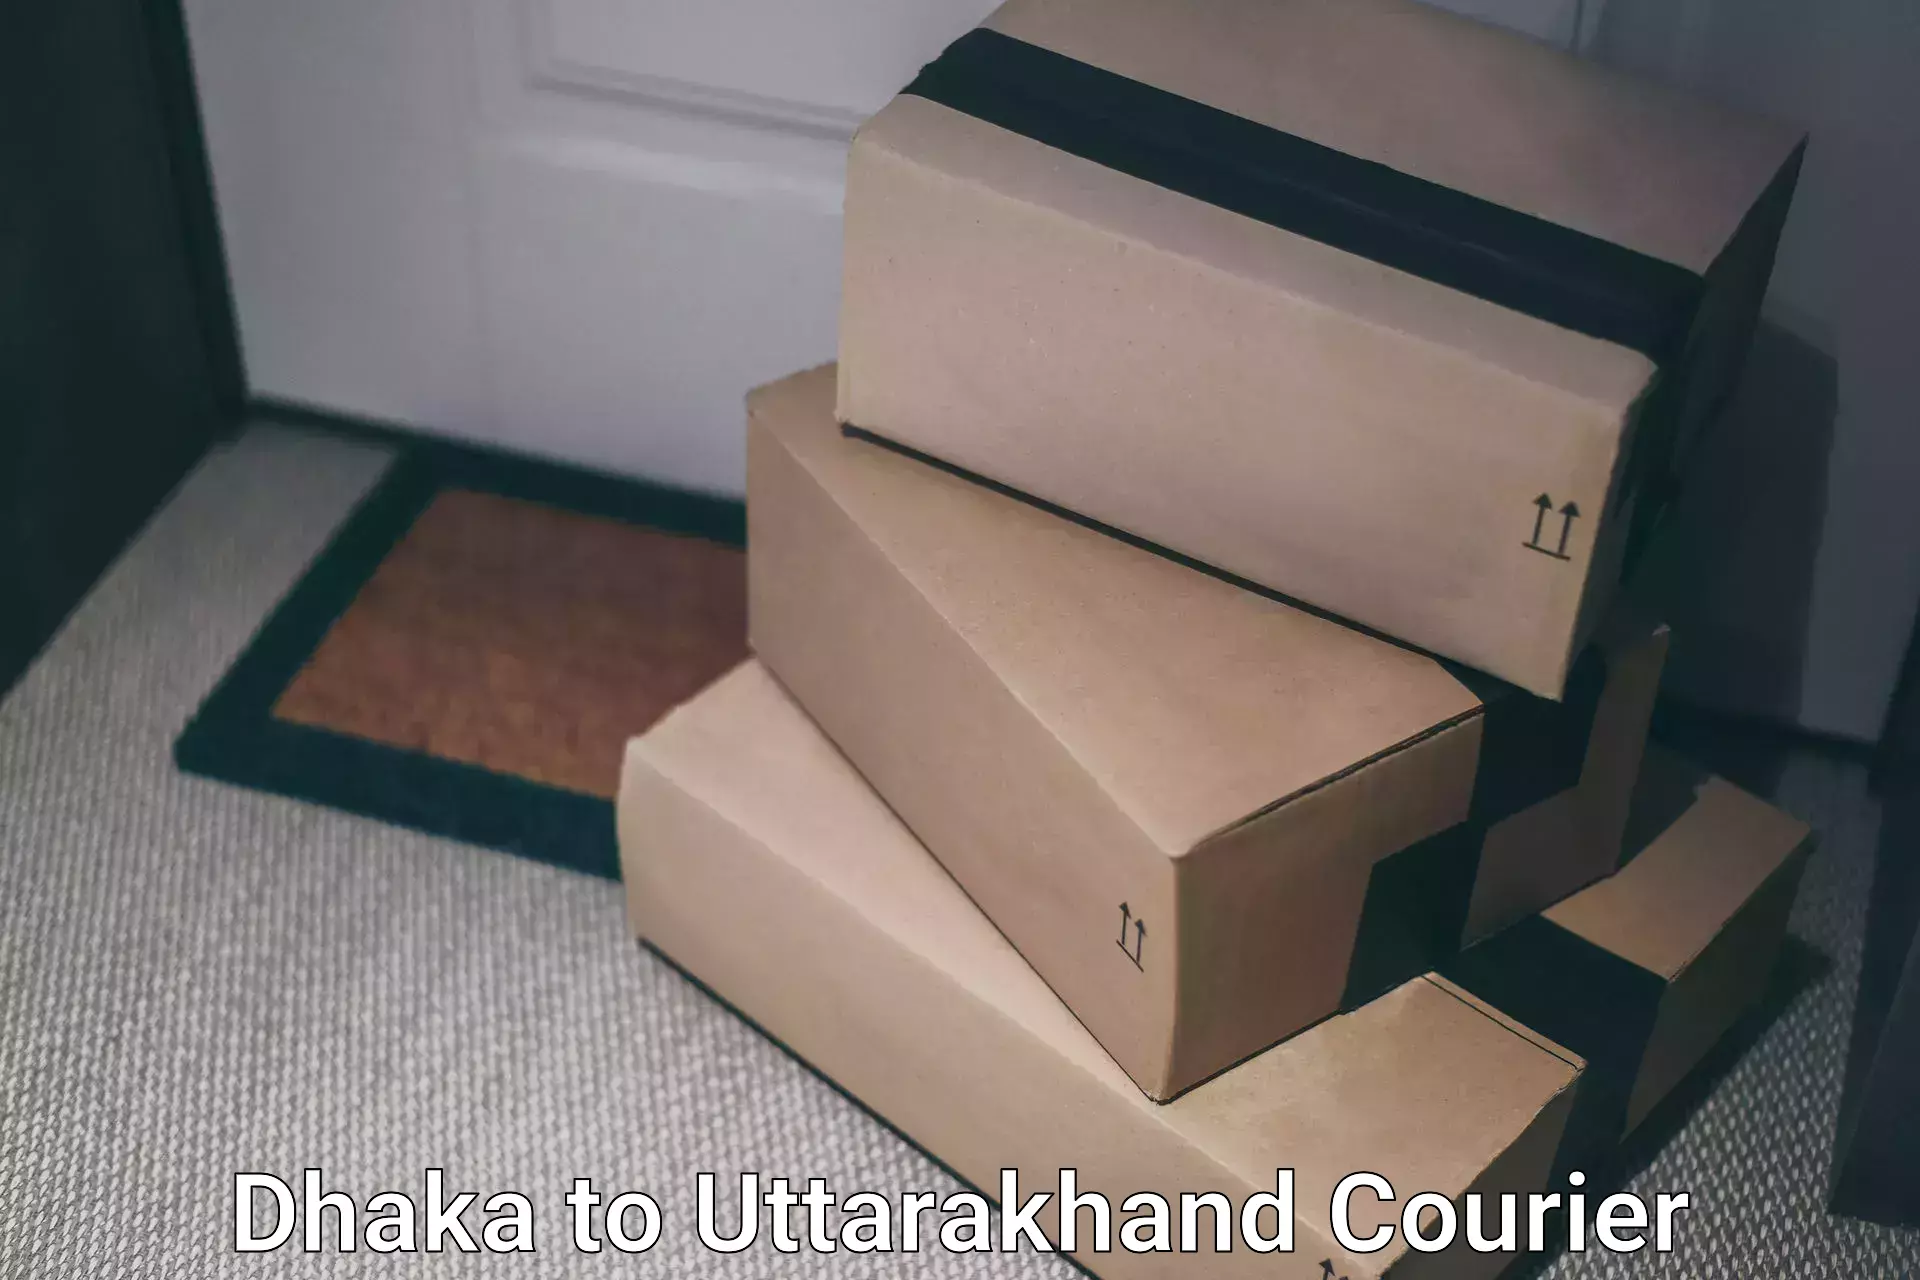 Bulk courier orders Dhaka to Uttarakhand